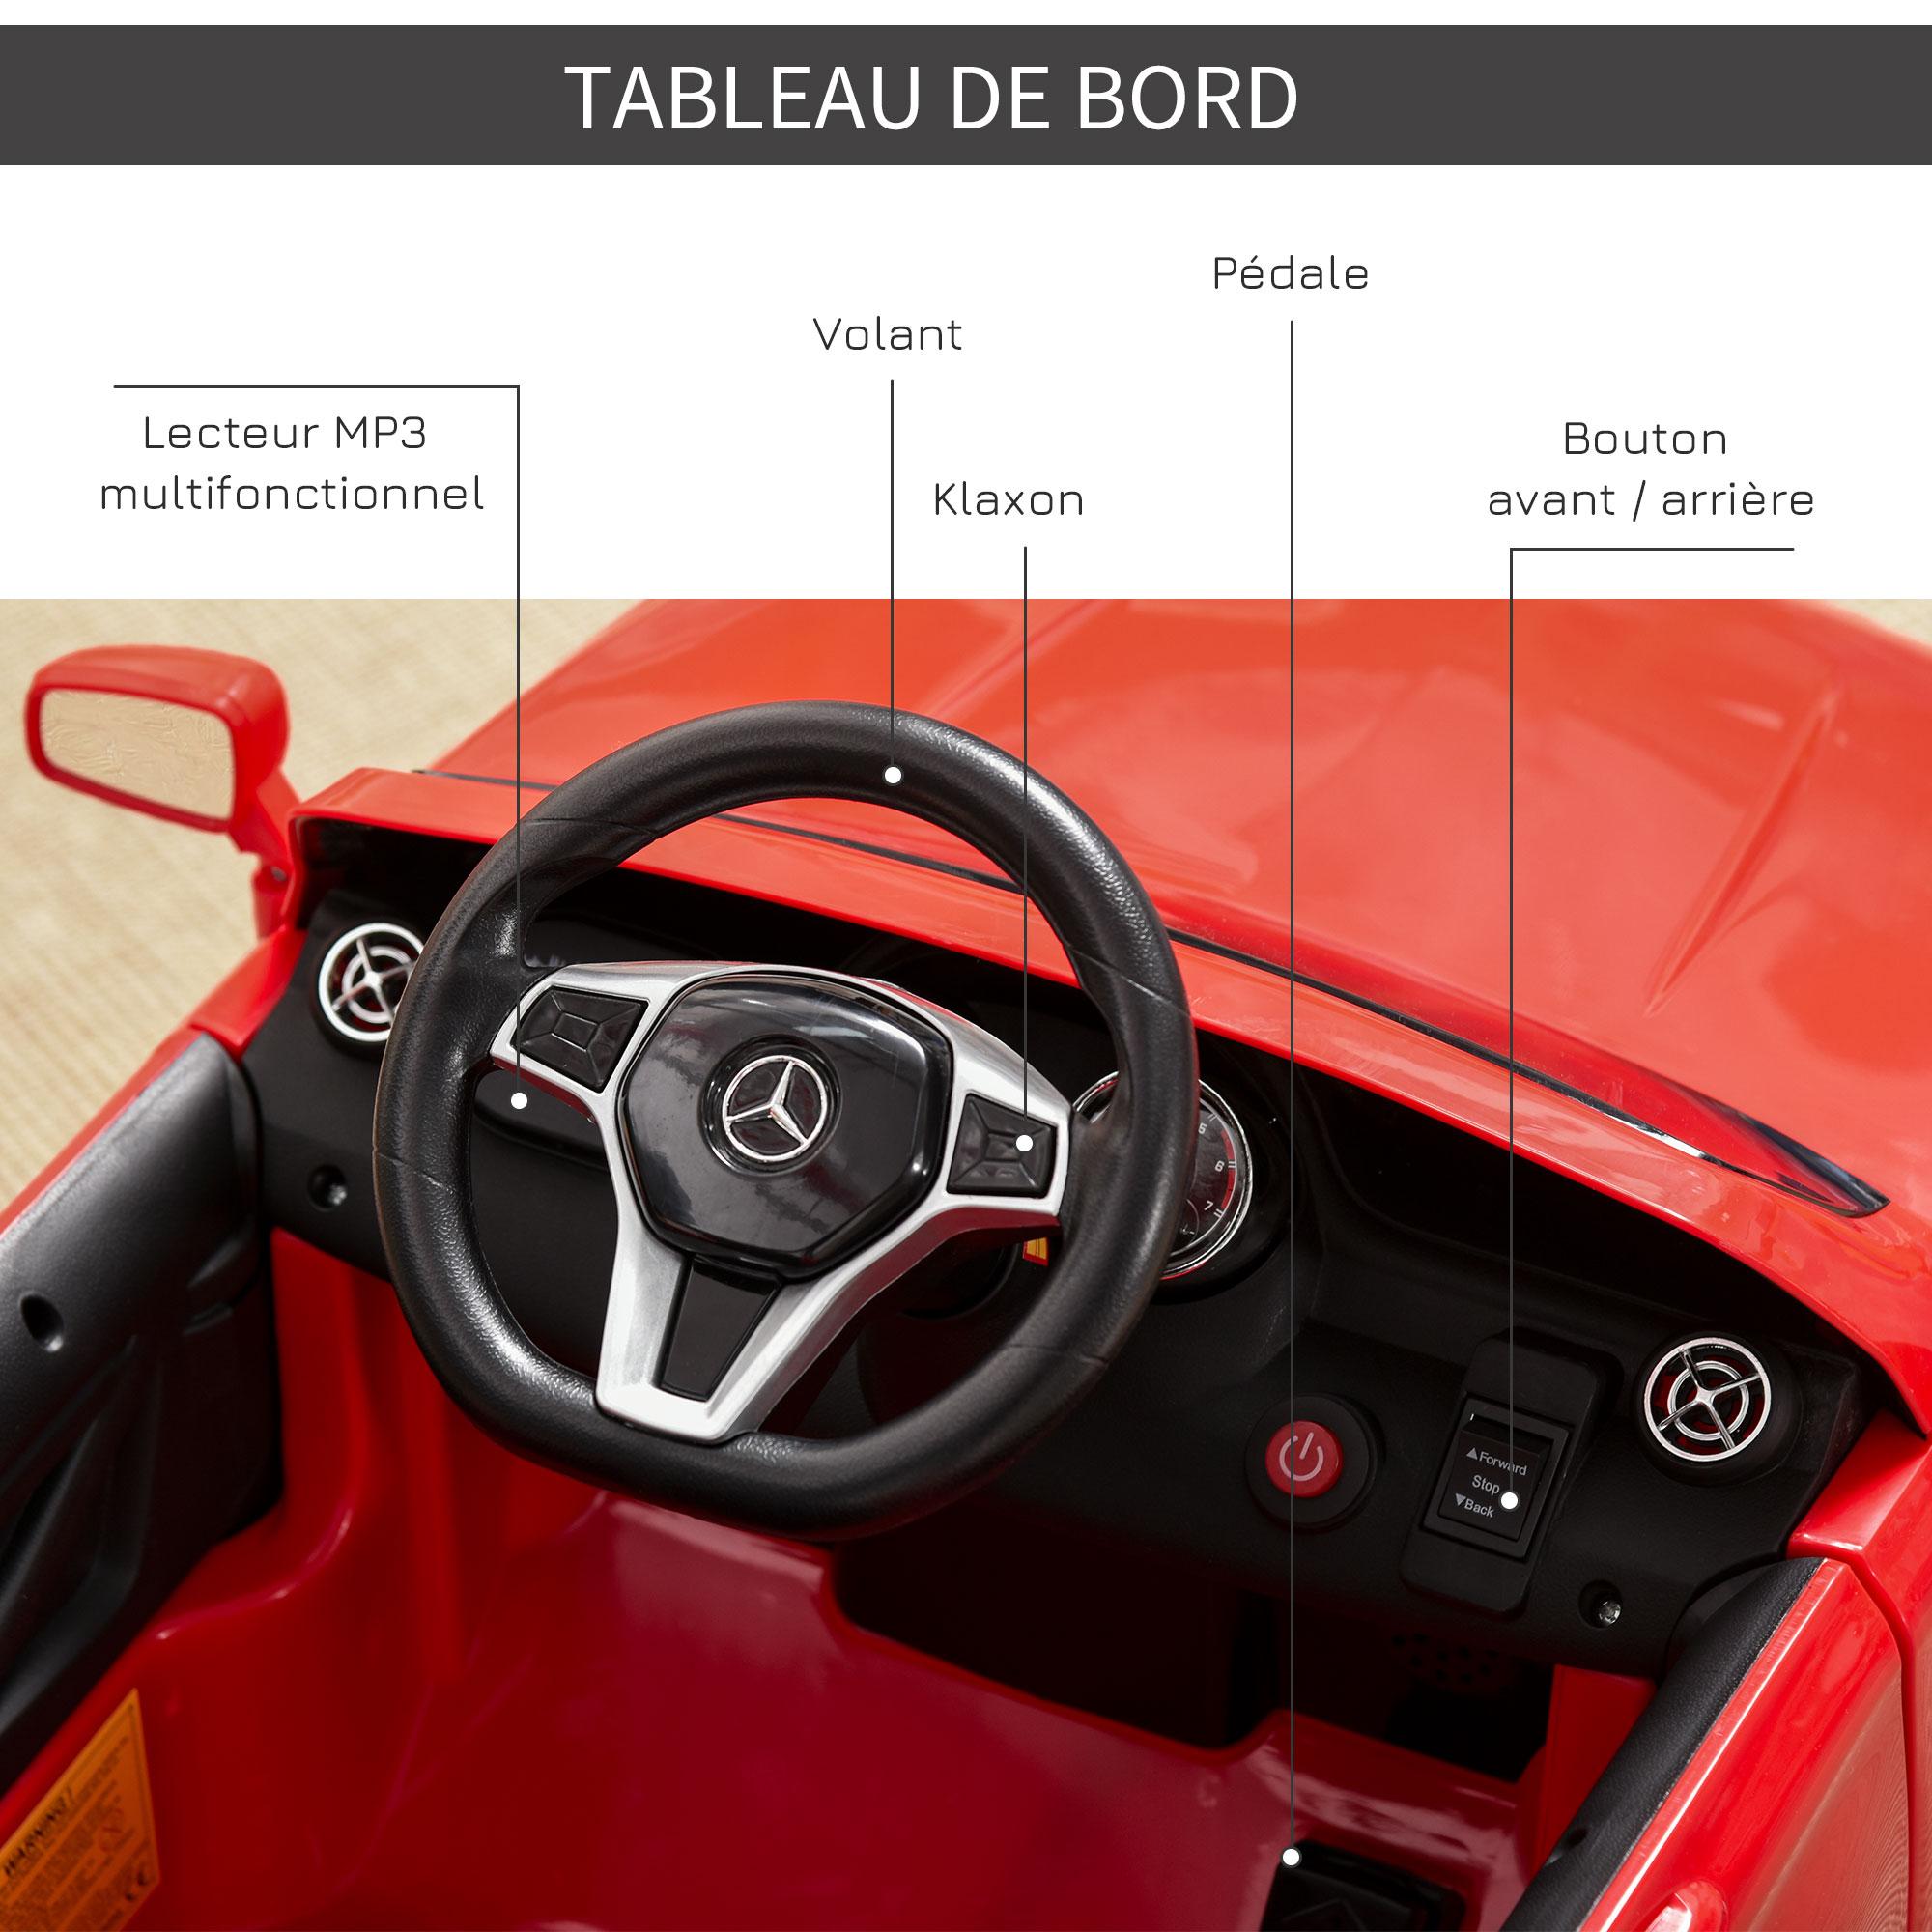 Voiture véhicule électrique enfant 6 V 7 Km/h max. télécommande effets sonores + lumineux Mercedes GLA AMG rouge